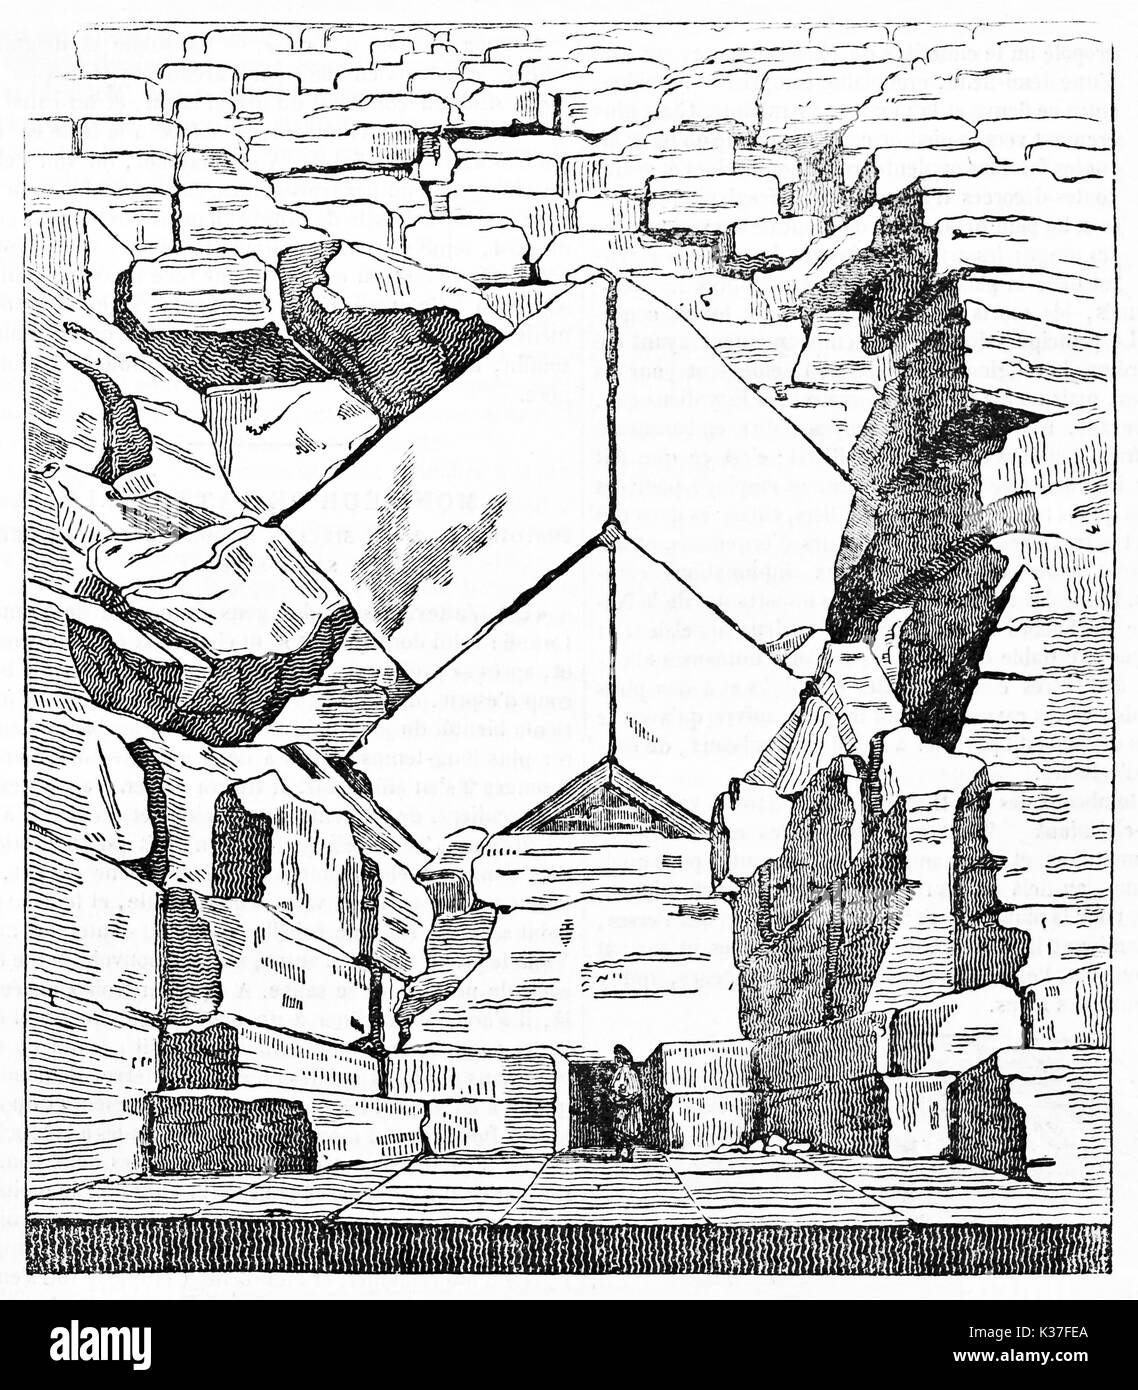 Antica vista maestosa dell'ingresso della Grande Piramide di Giza in Egitto. Piccola persona confrontata con le pietre di grandi dimensioni. Vecchia illustrazione di autore non identificato, Magasin pittoresco Parigi 1834 Foto Stock